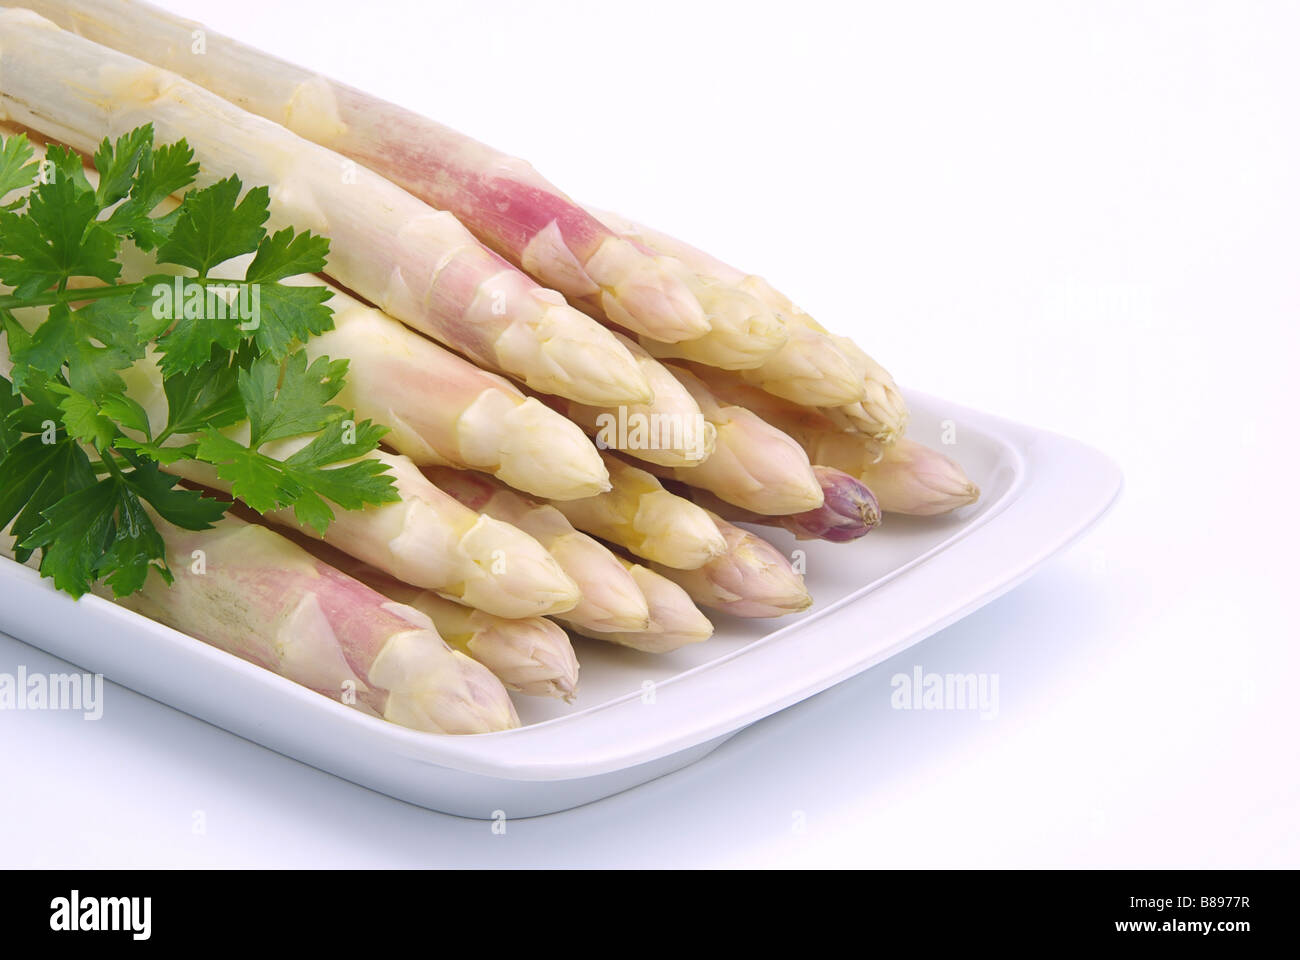 Spargel asparagus 06 Stock Photo